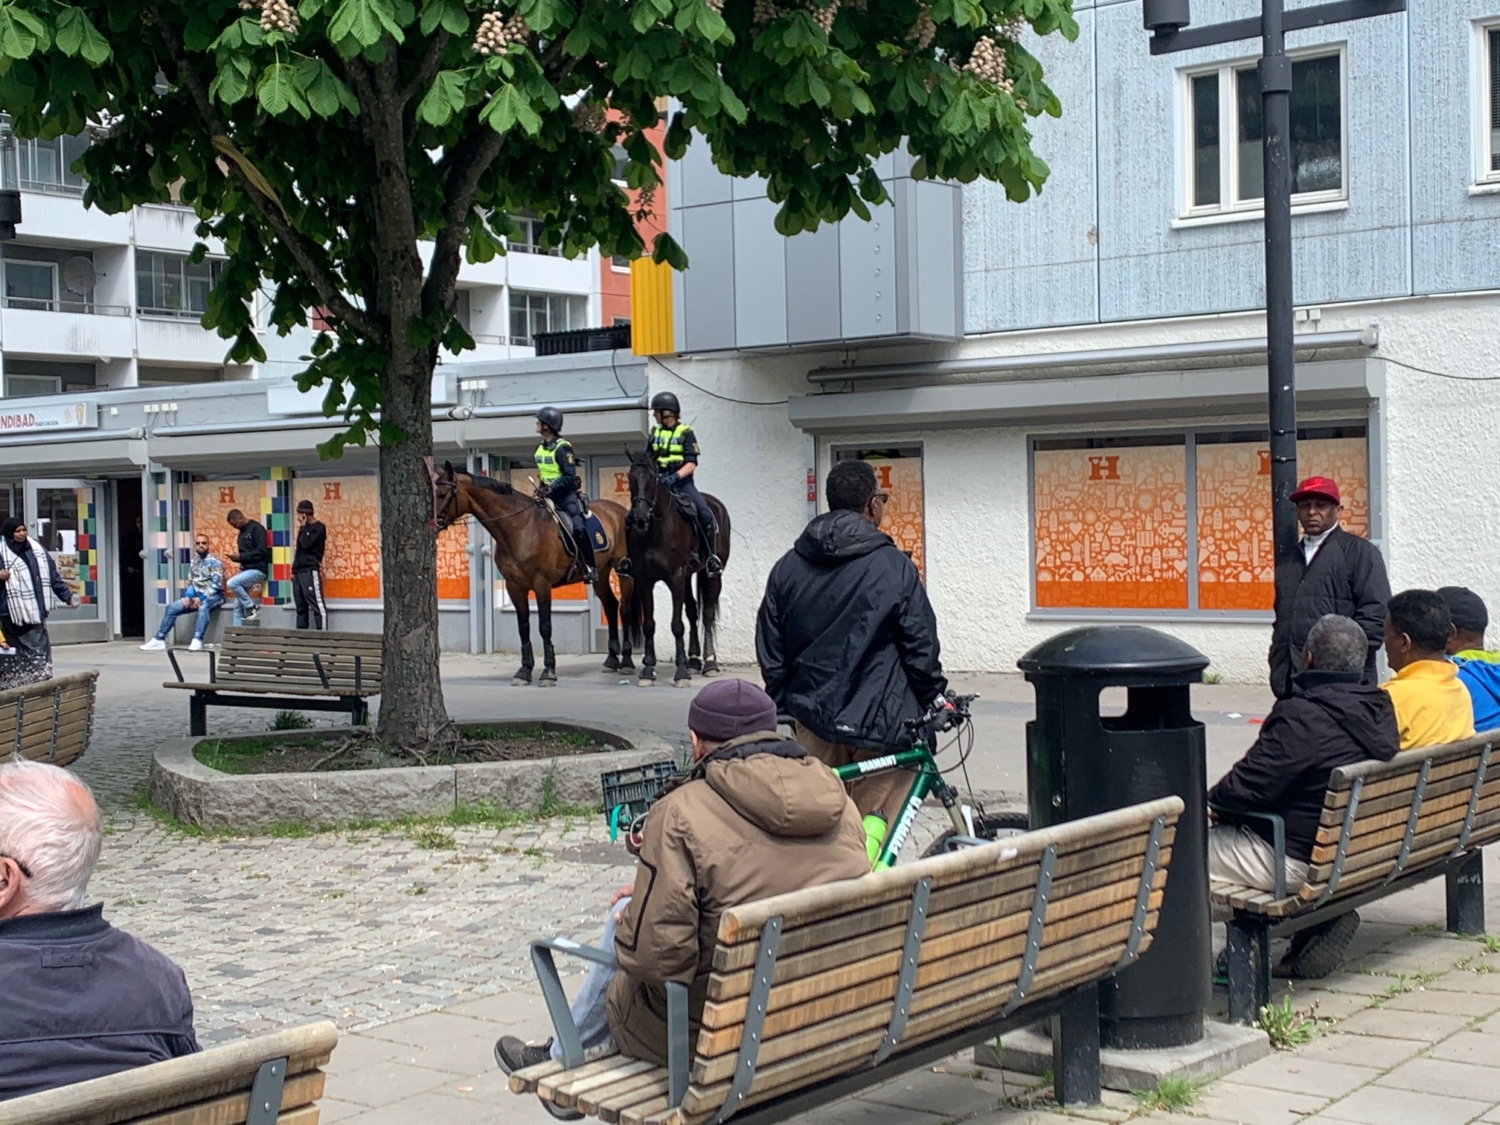 polis på häst och folk på torget i Husby.